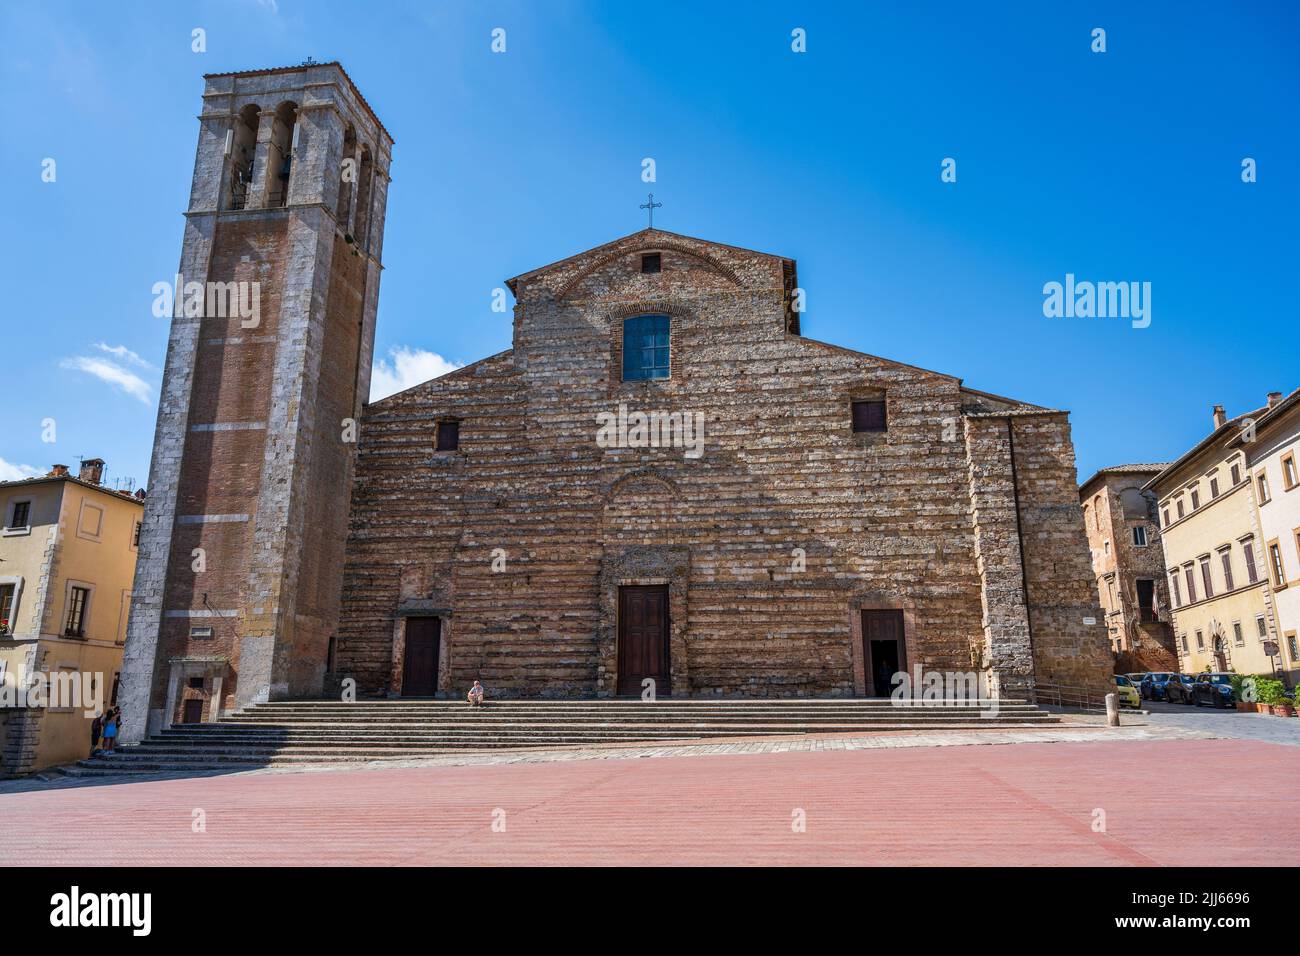 Cathédrale de Montepulciano (Duomo di Montepulciano) sur la Piazza Grande, la place principale de la ville de Montepulciano, au sommet d'une colline, en Toscane, en Italie Banque D'Images